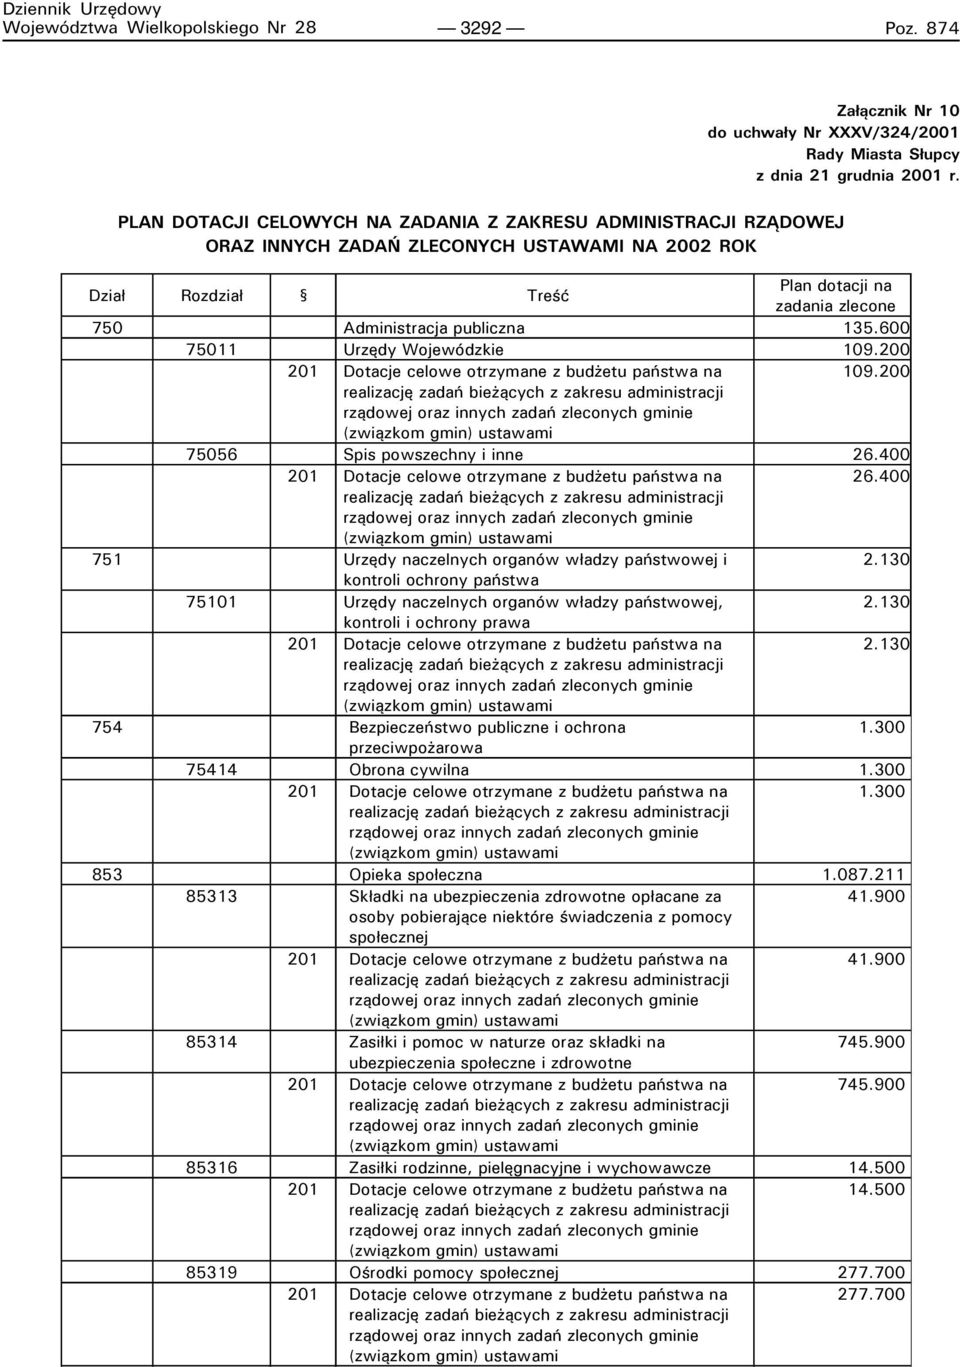 600 75011 Urzędy Wojewódzkie 109.200 201 Dotacje celowe otrzymane z budżetu państwa na 109.